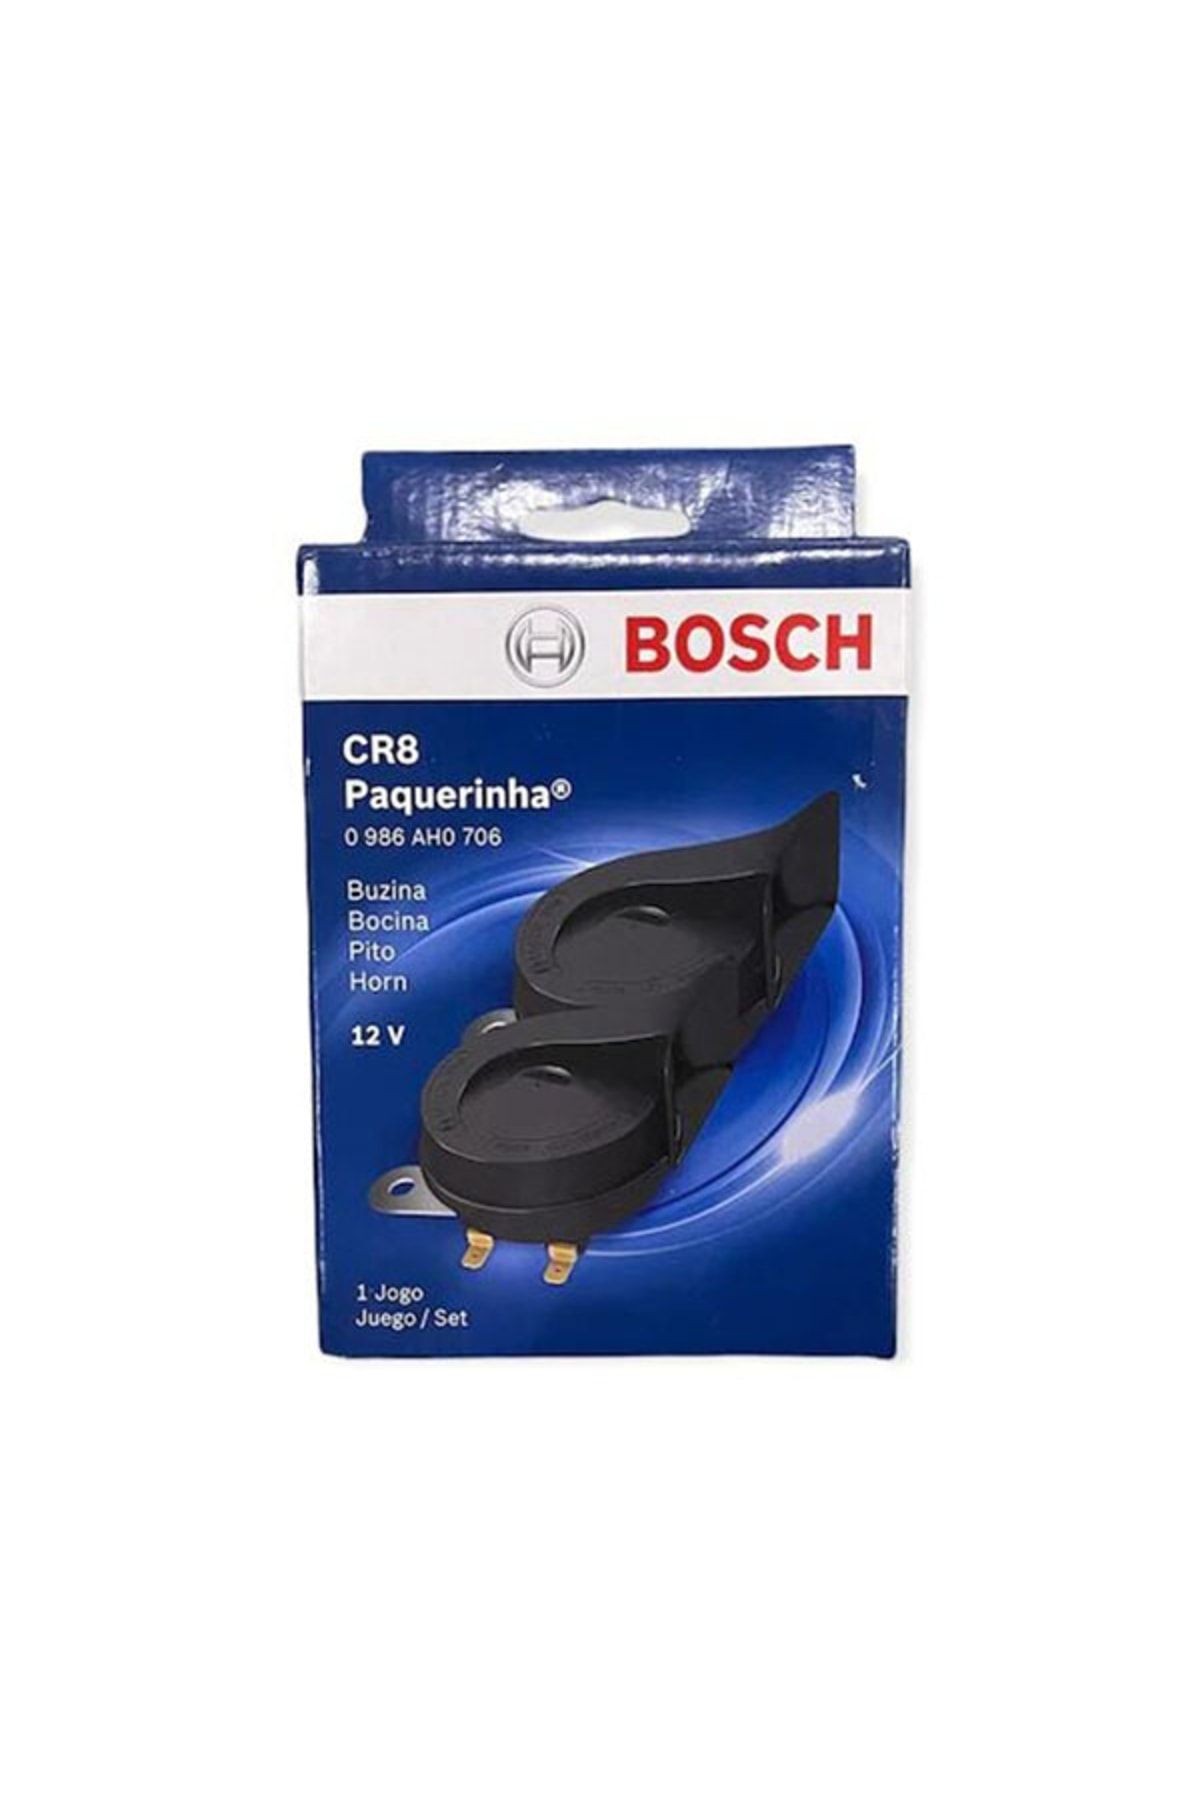 Bosch Cr8 Dadat Korna 12v